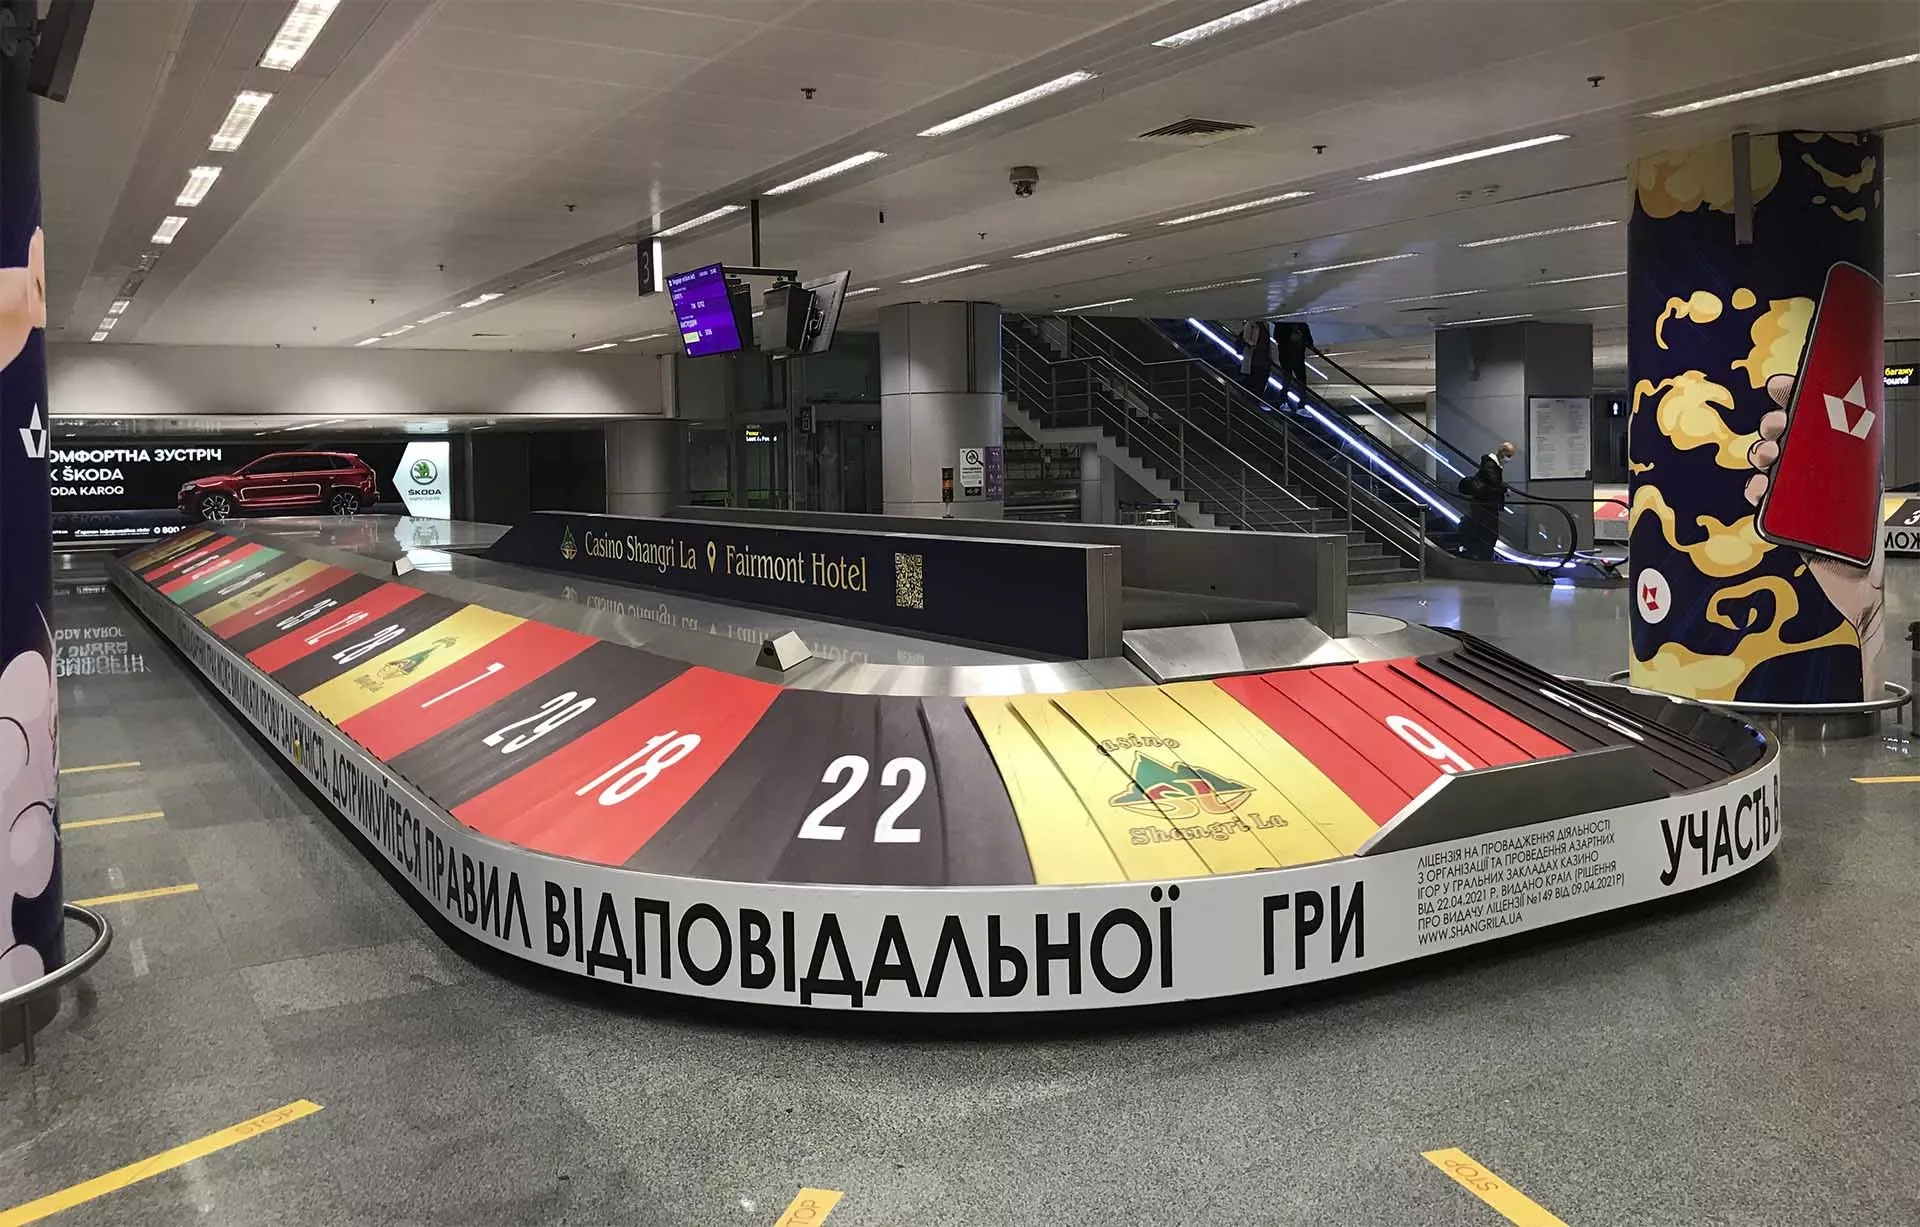 Новый образ брендированных багажных лент в аэропорту Борисполь